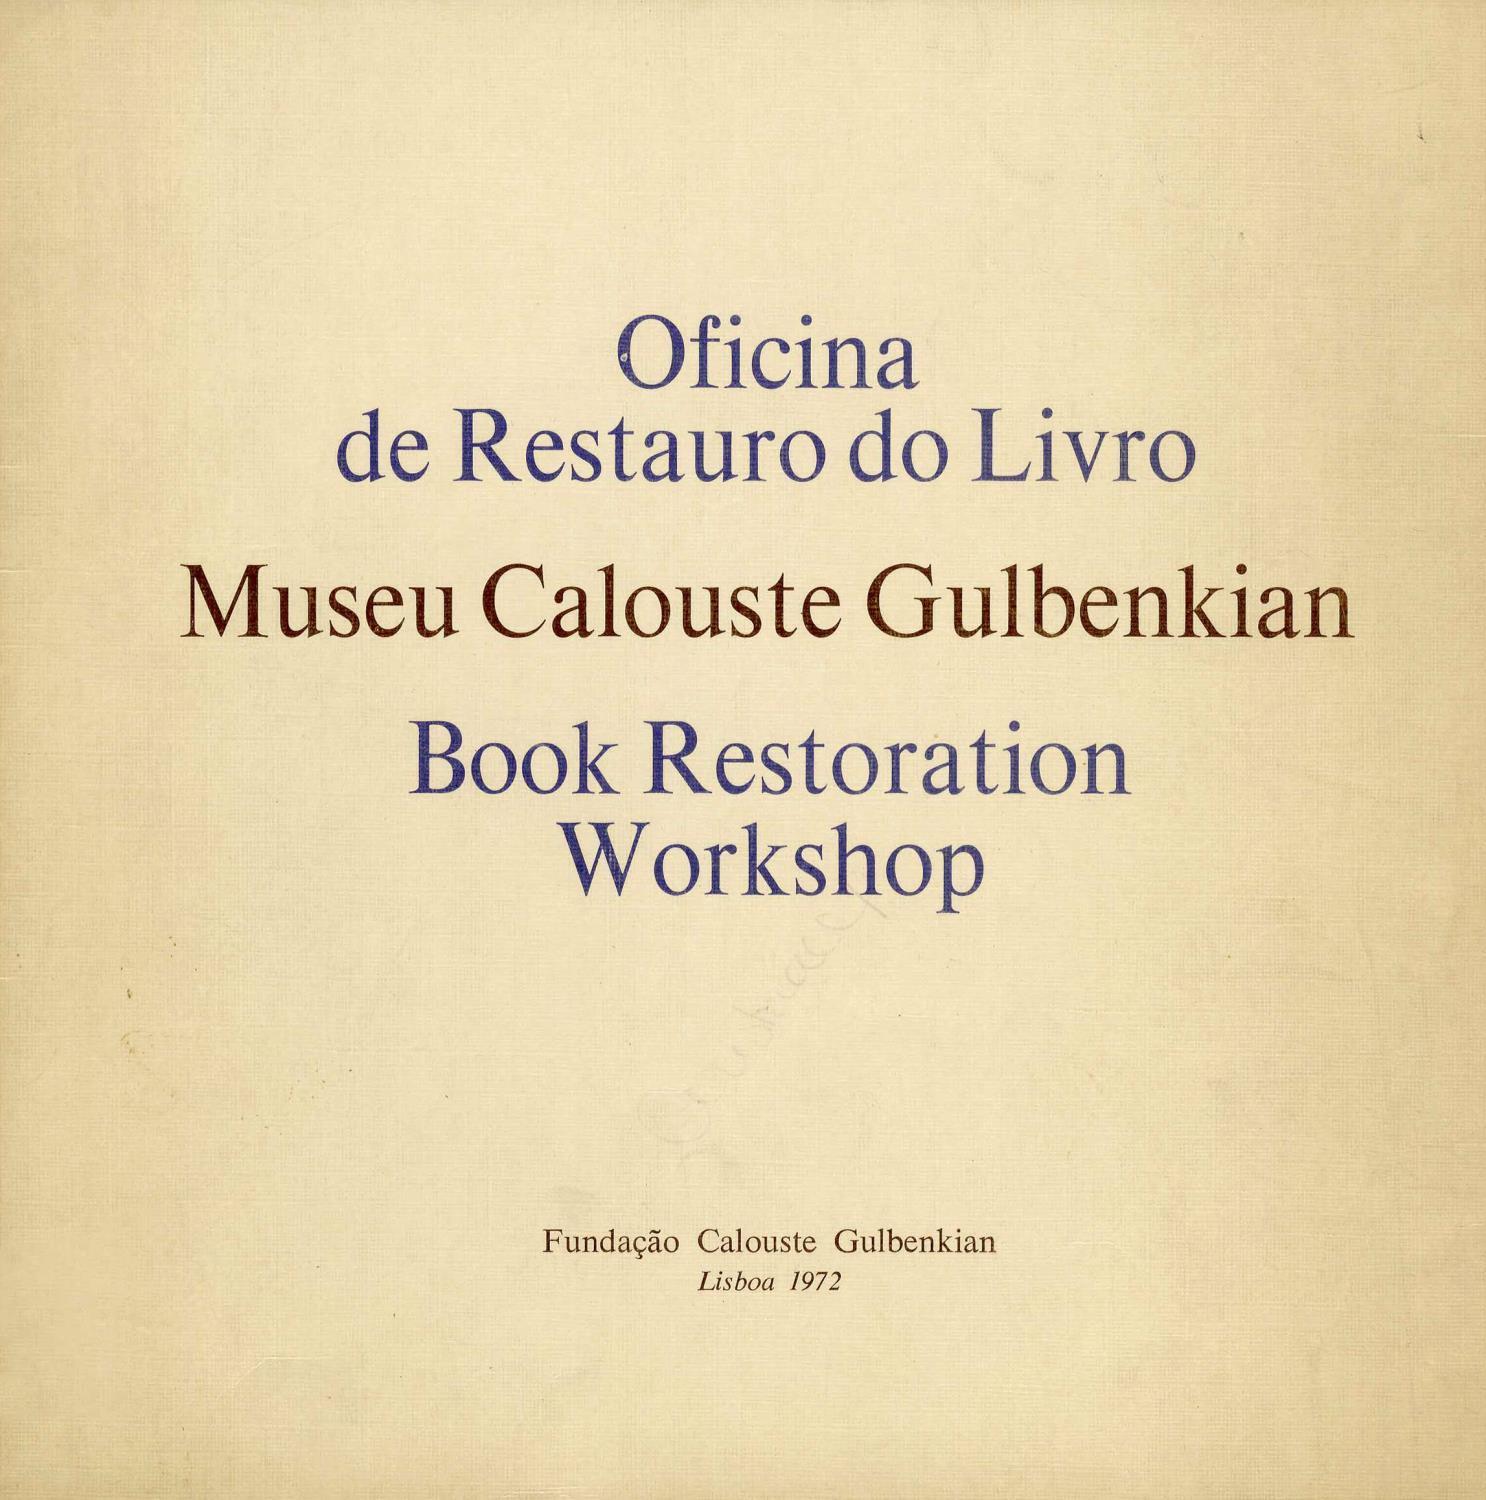 1972_Oficina_de_Restauro_do_Livro_CFPE1438